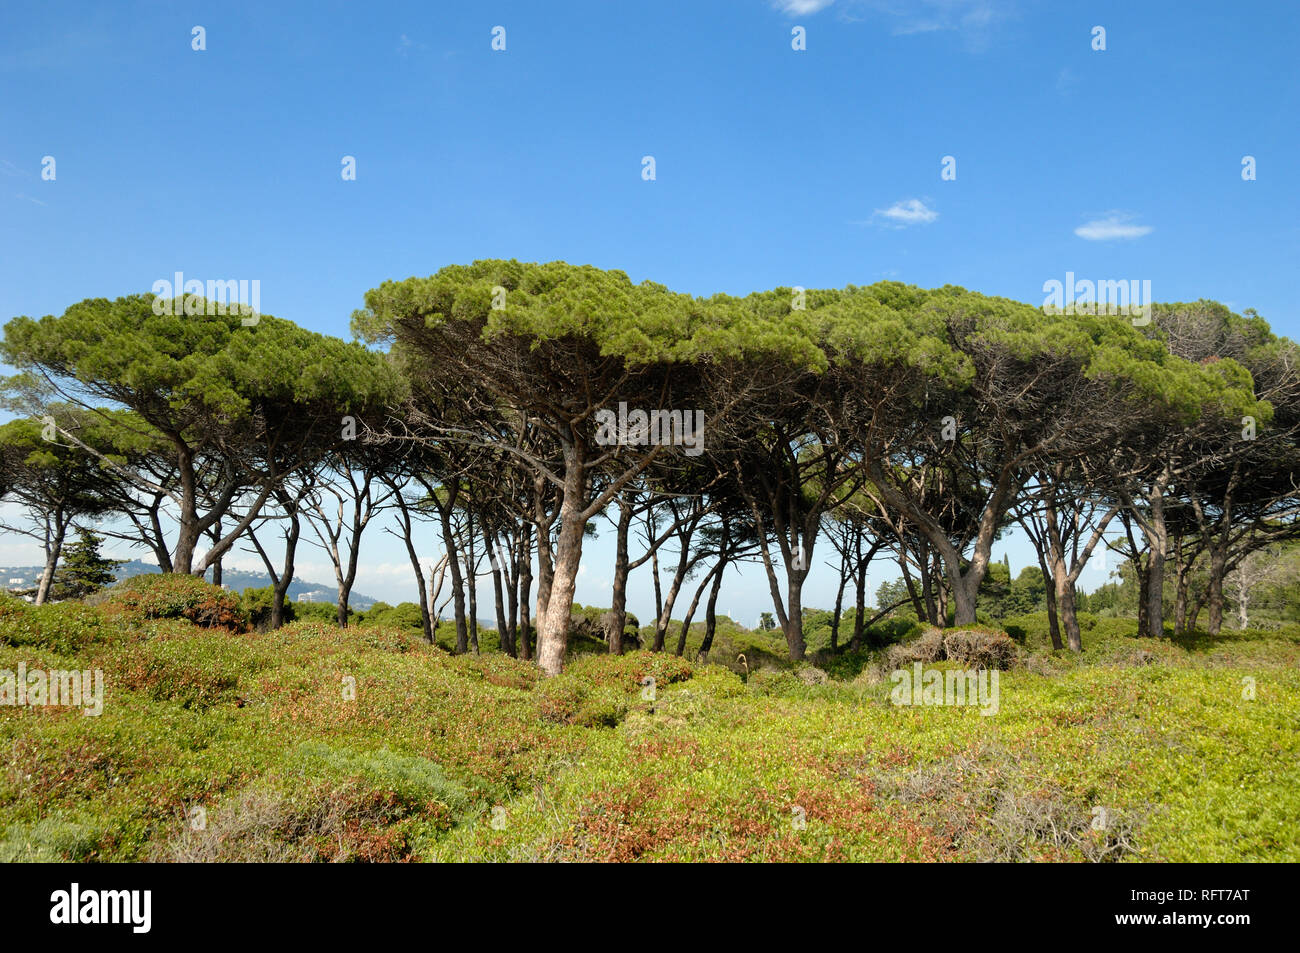 Reihe von Schirmpinien, Sonnenschirm Kiefern oder Stein Kiefern, Pinus Pinea, auf der Île Sainte Marguerite Insel vor der Küste der französischen Riviera in Cannes. Stockfoto